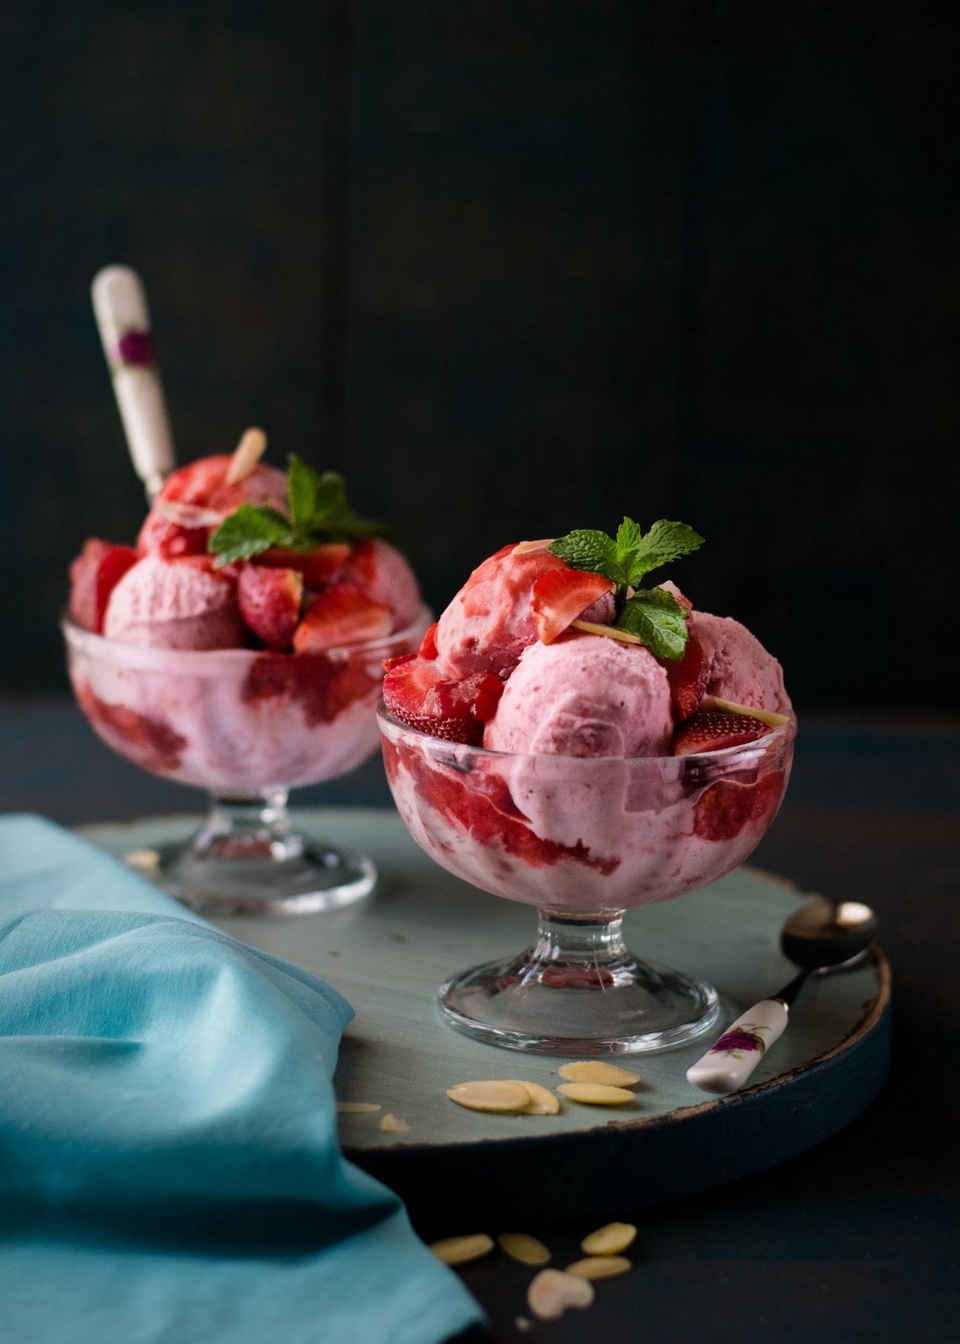 Мороженное (орехи,шоколад, топинг,фрукты) - 180 ₽, заказать онлайн.